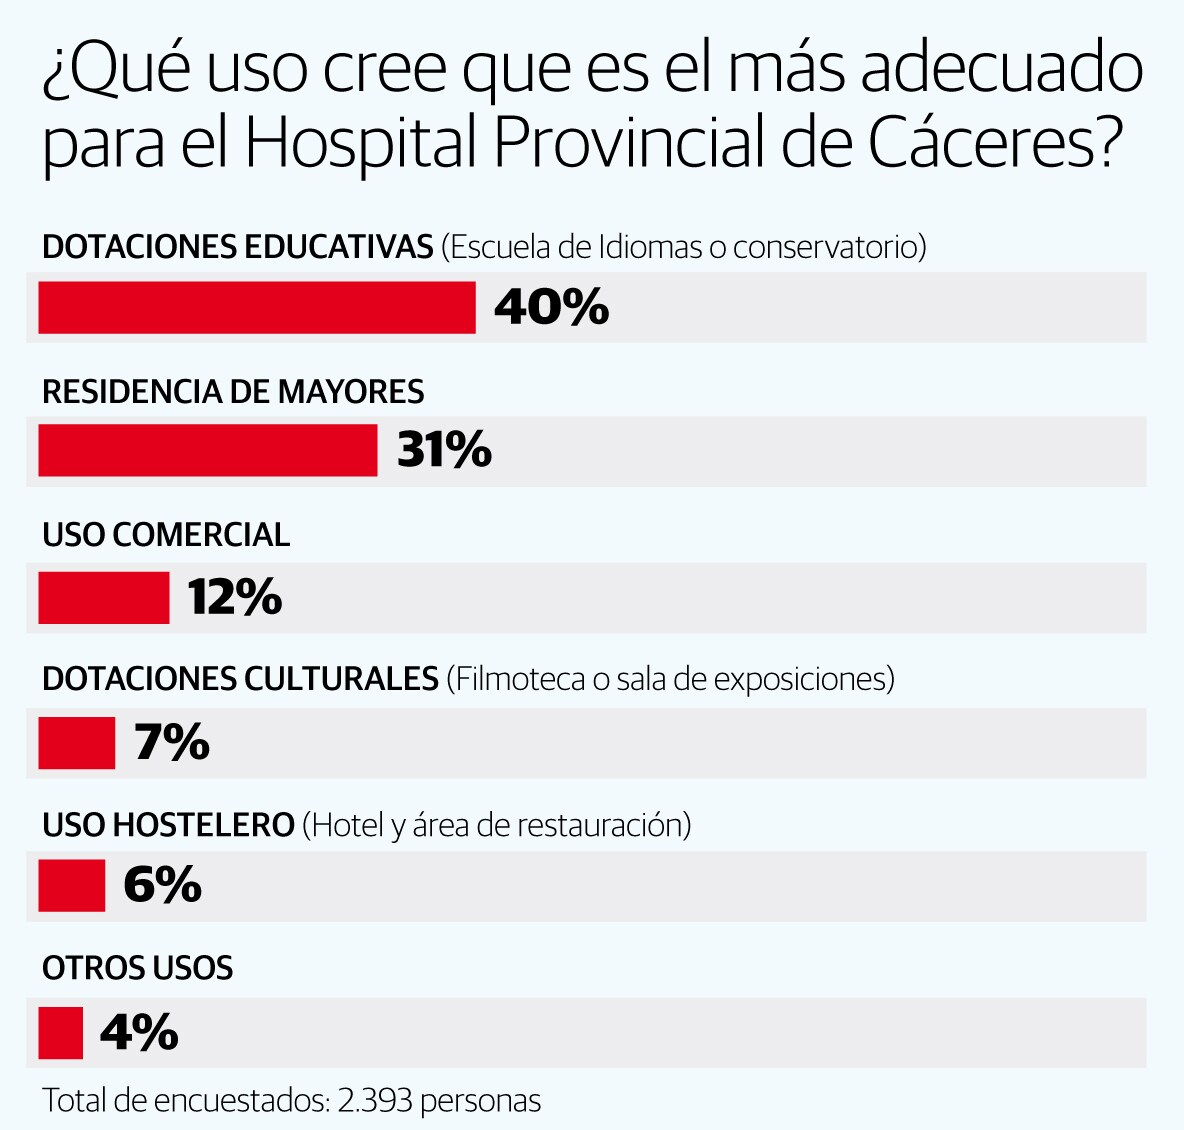 Resultado de la encuesta sobre el uso para el Hospital Provincial de Cáceres